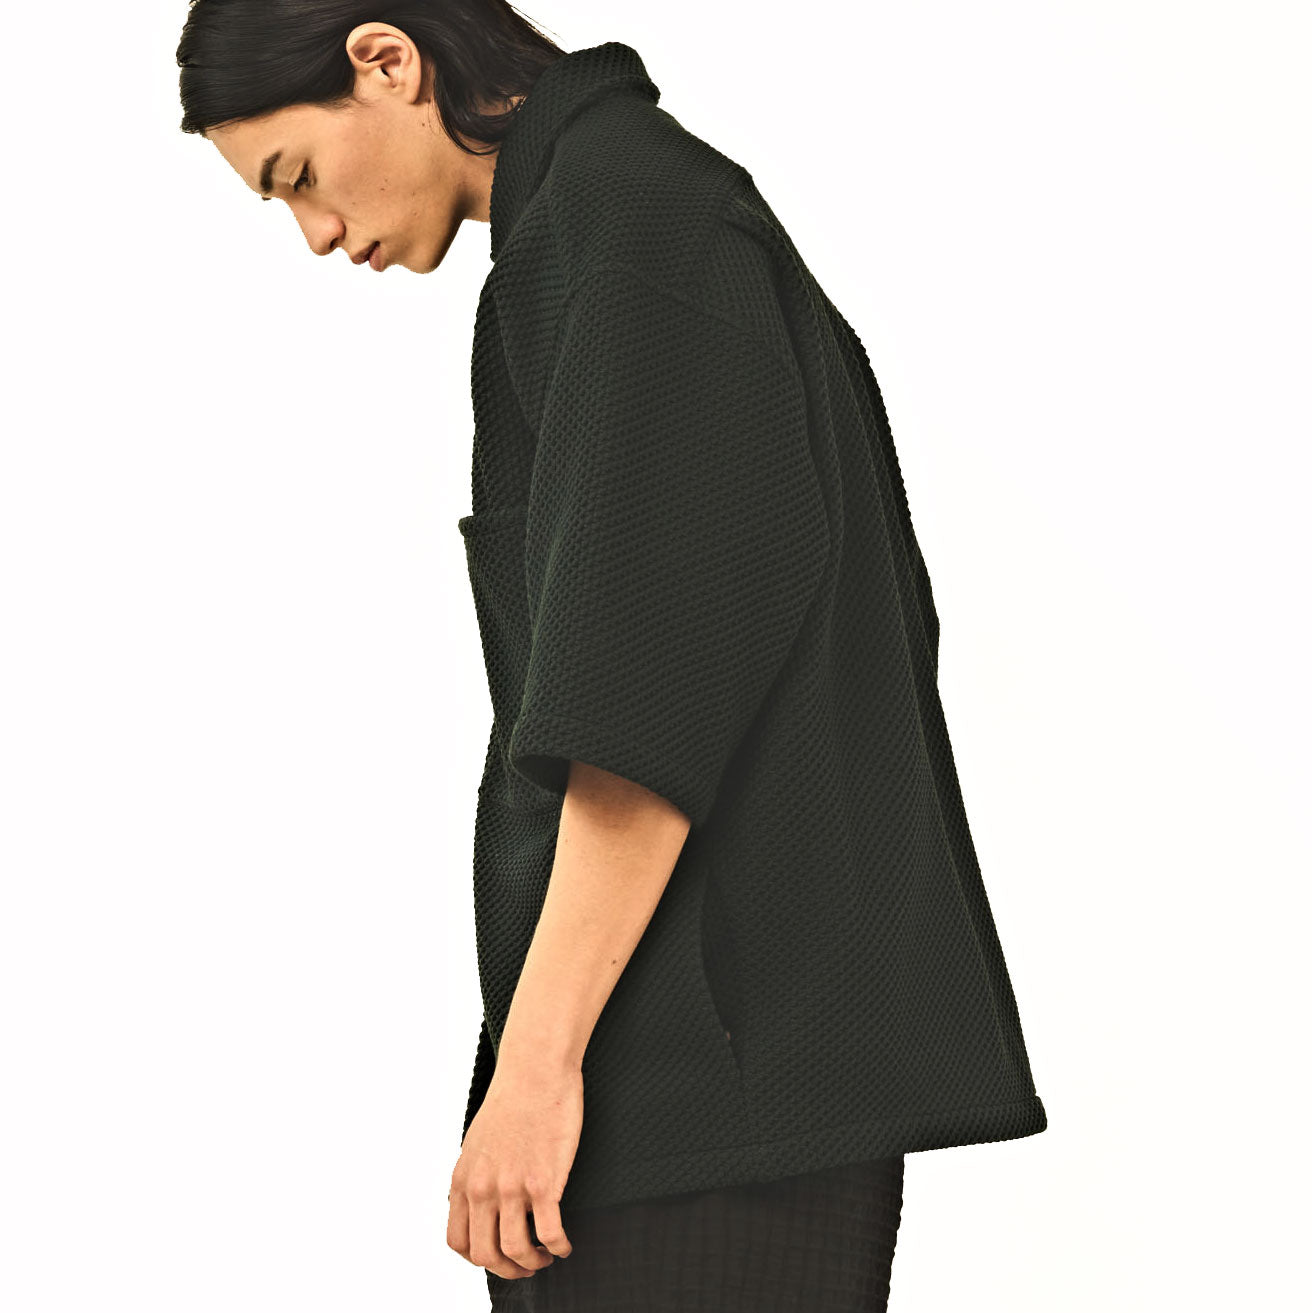 KELEN ケレン | OPEN COLLAR MESH SHIRT JKT / 開襟シャツジャケット カラー:ブラック